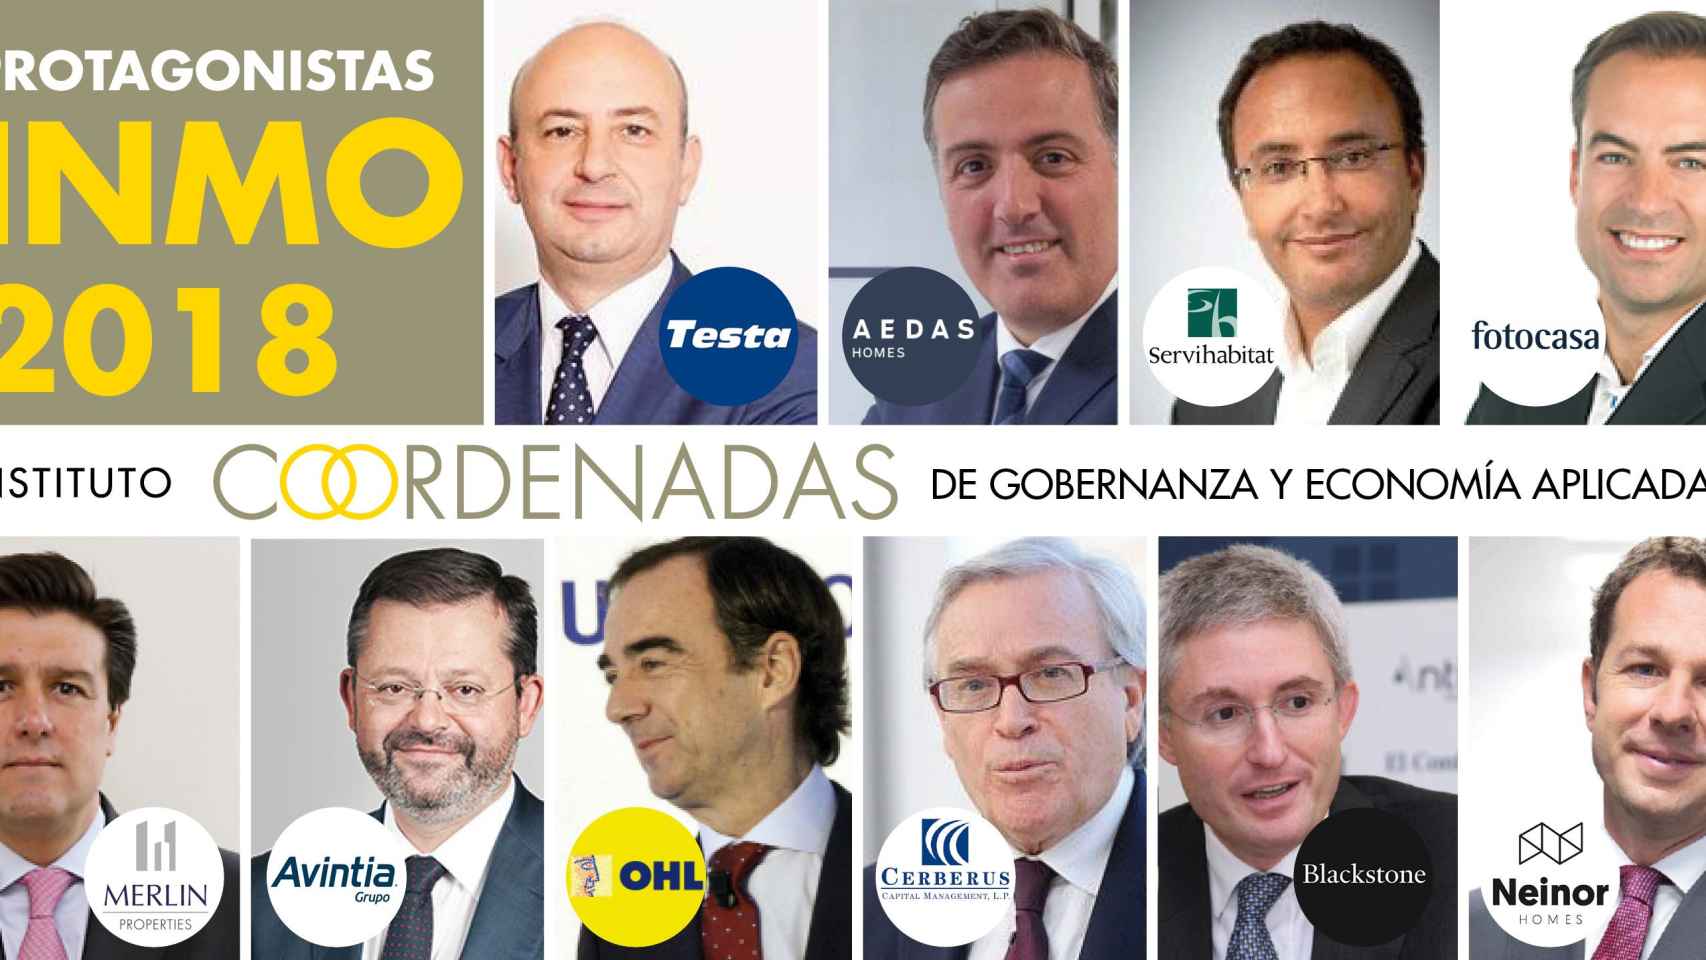 Protagonistas del sector inmobiliario en España en 2018 / FOTOMONTAJE DE CG